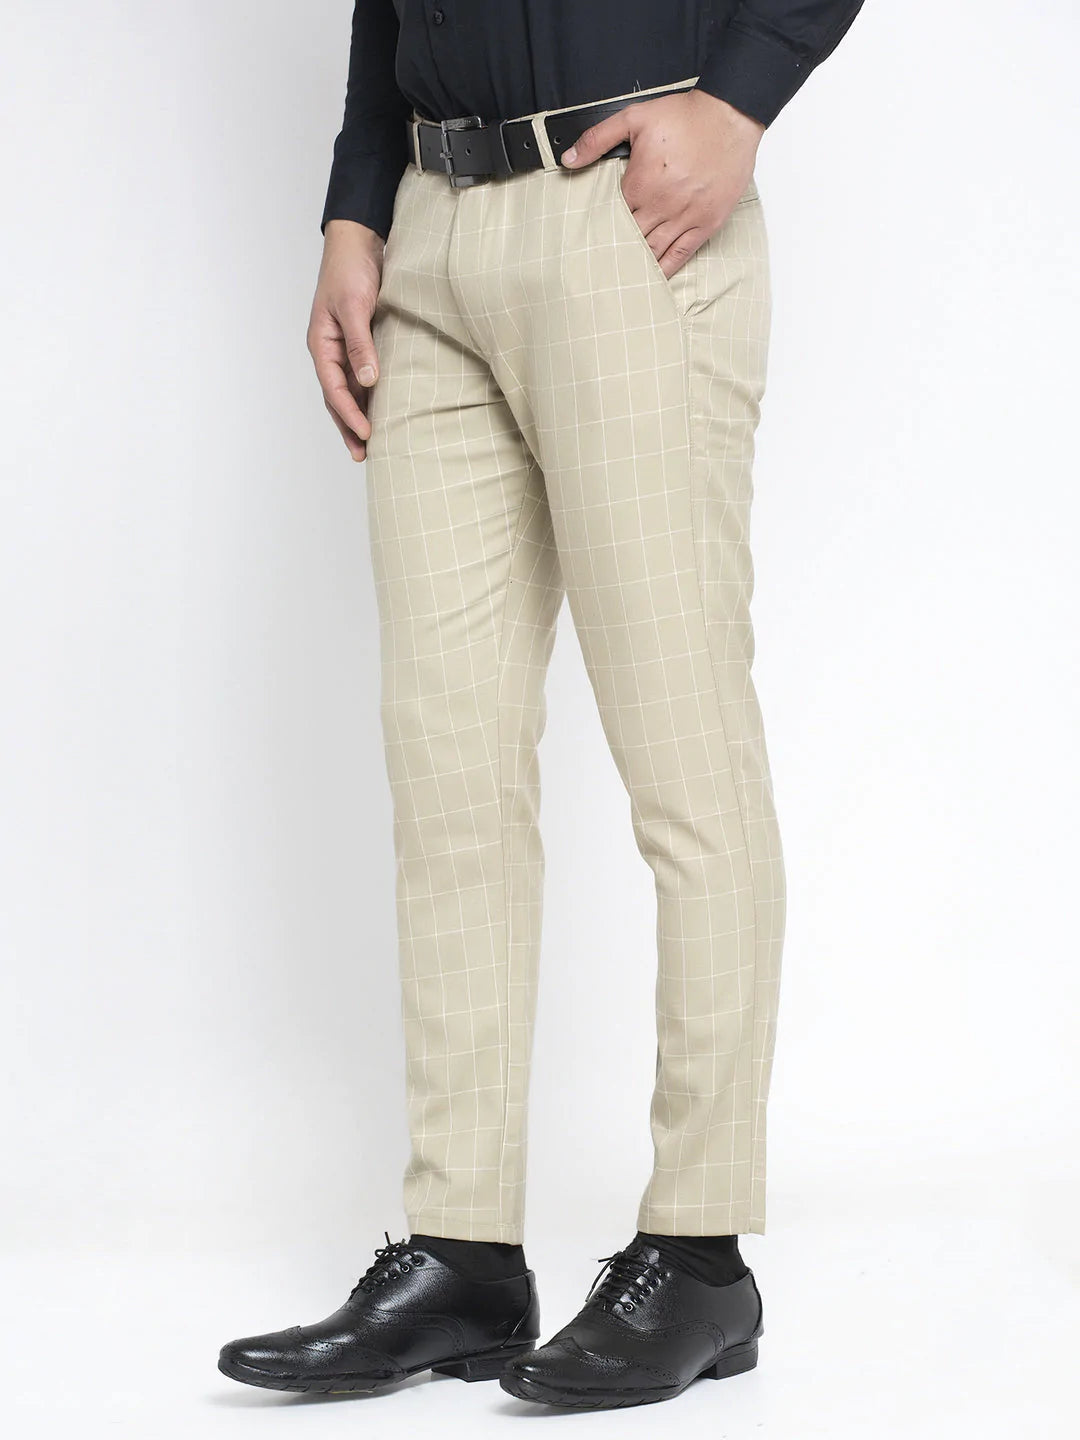 Jainish Men's Cream Formal Trousers ( FGP 260Cream )